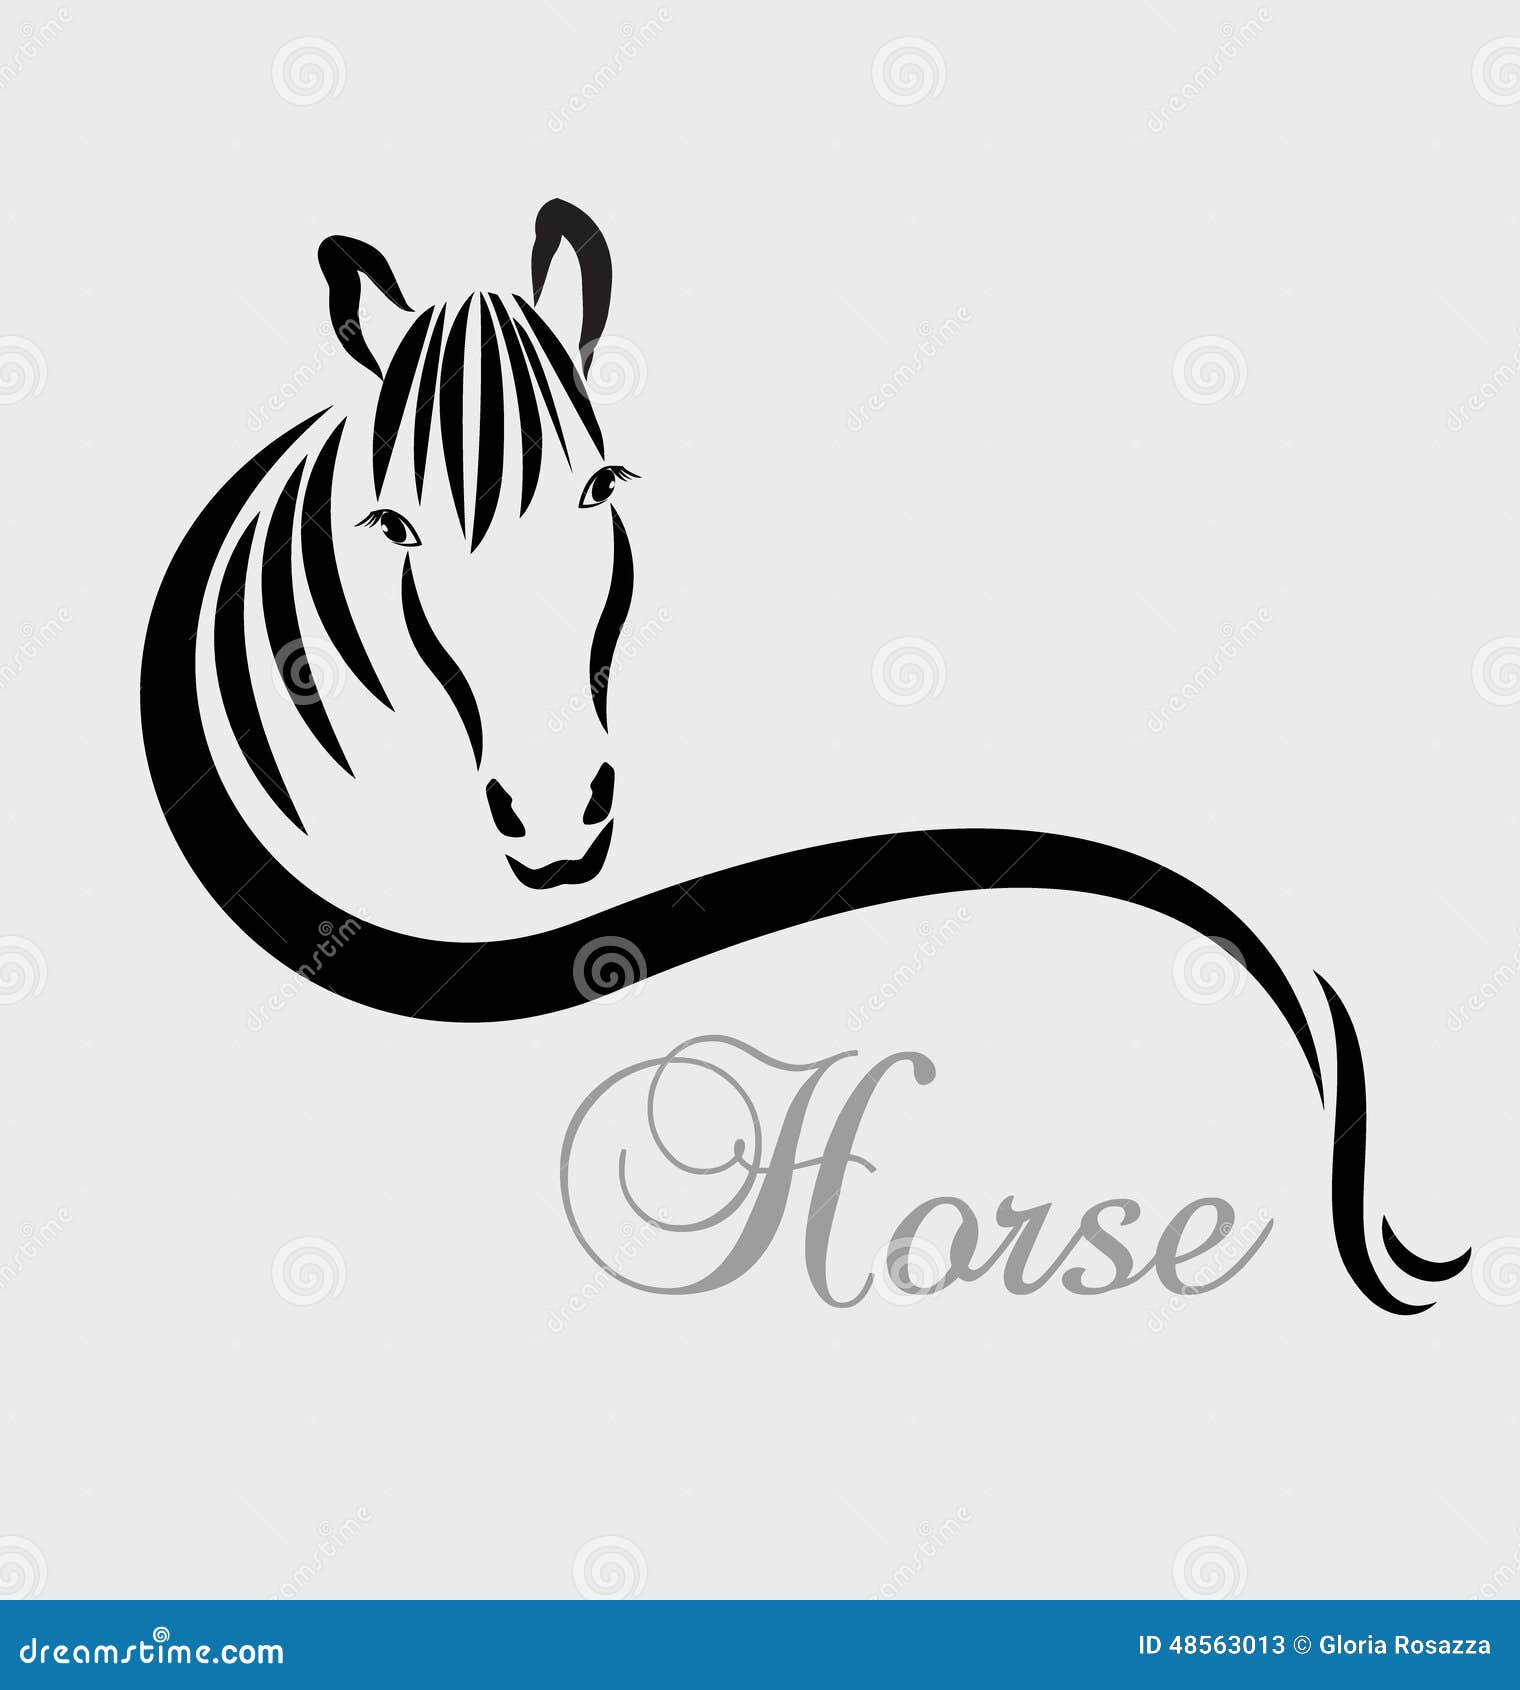 stylized horse logo